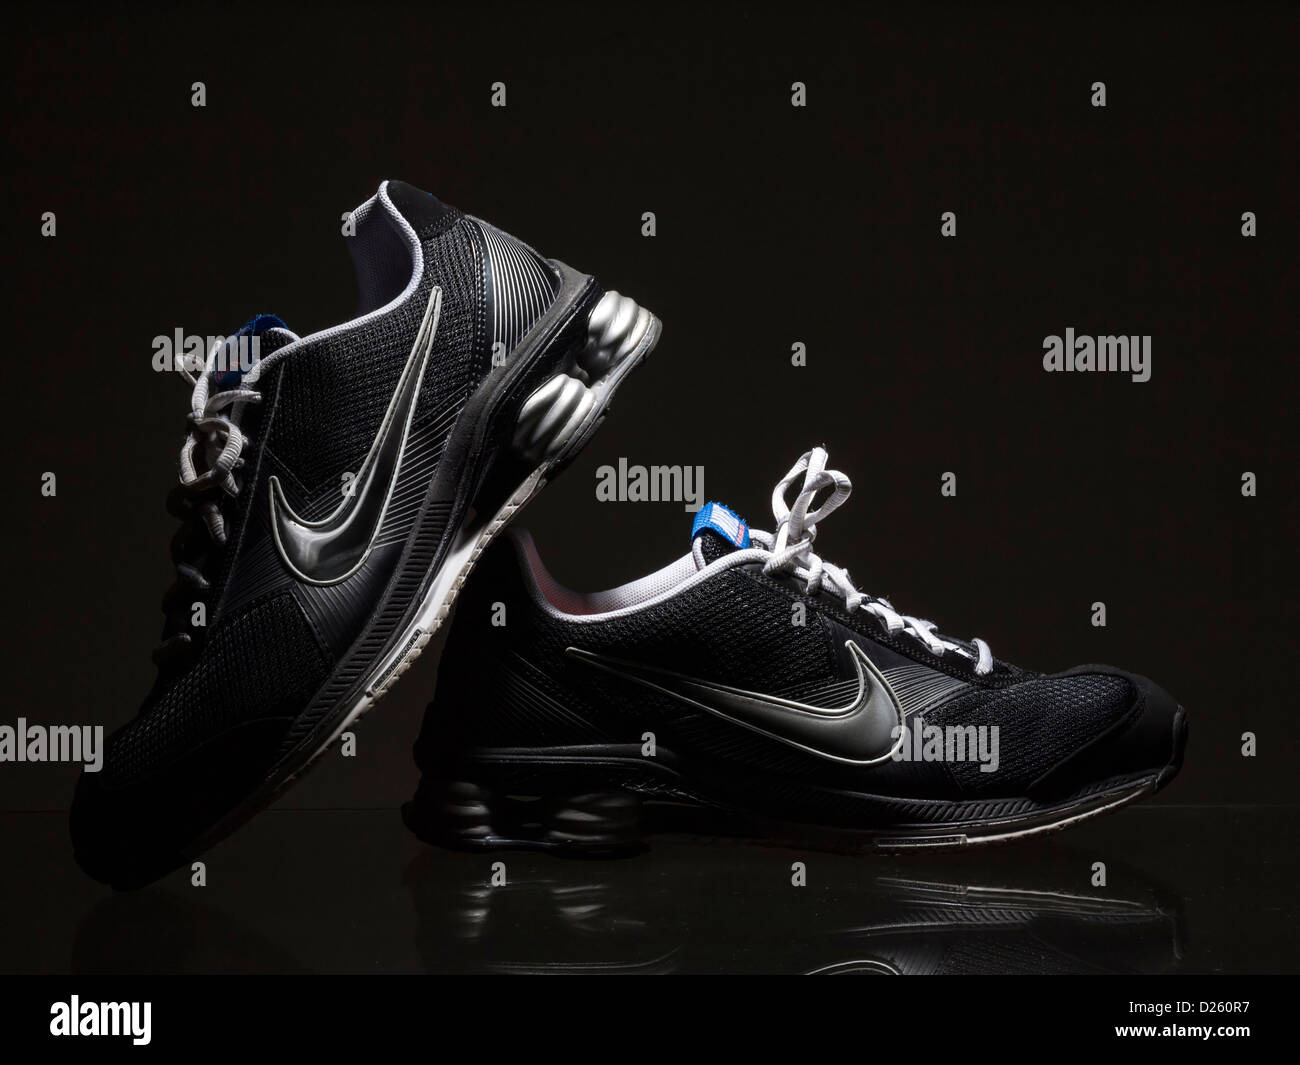 Paire de chaussures de course Nike noir sur fond sombre Photo Stock - Alamy